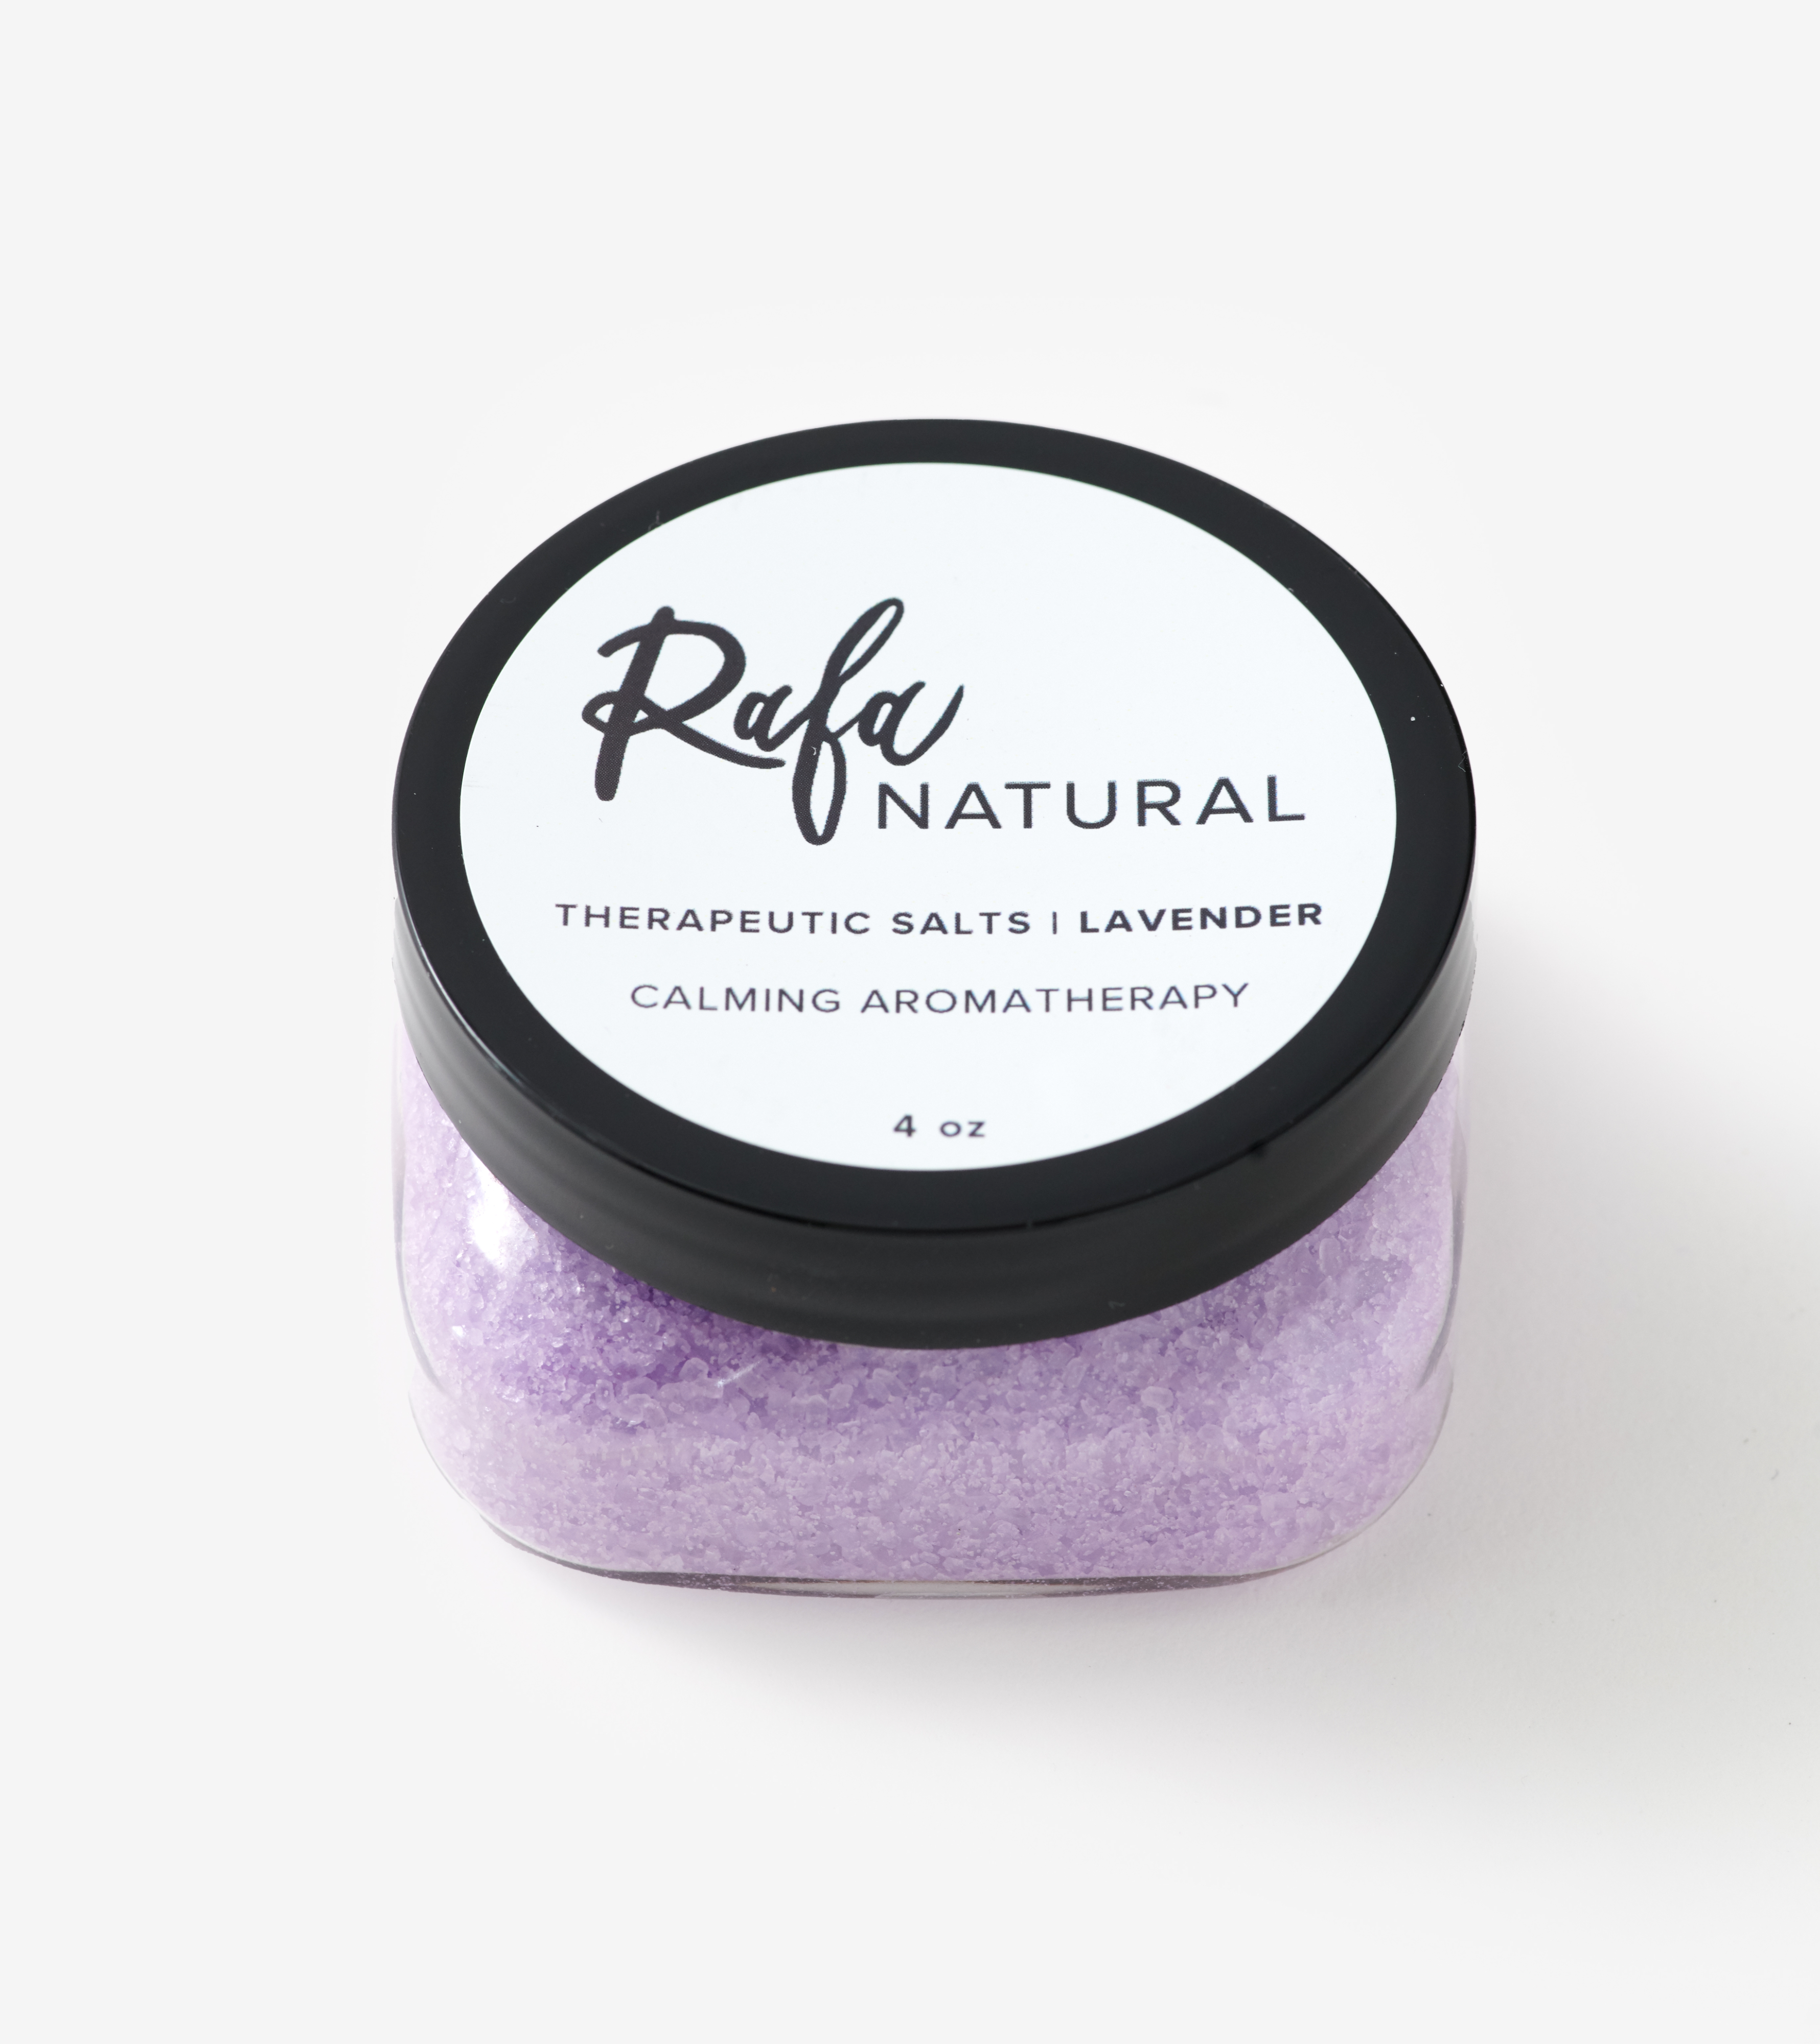 4oz. Lavender Bath Salts by Rafa Natural